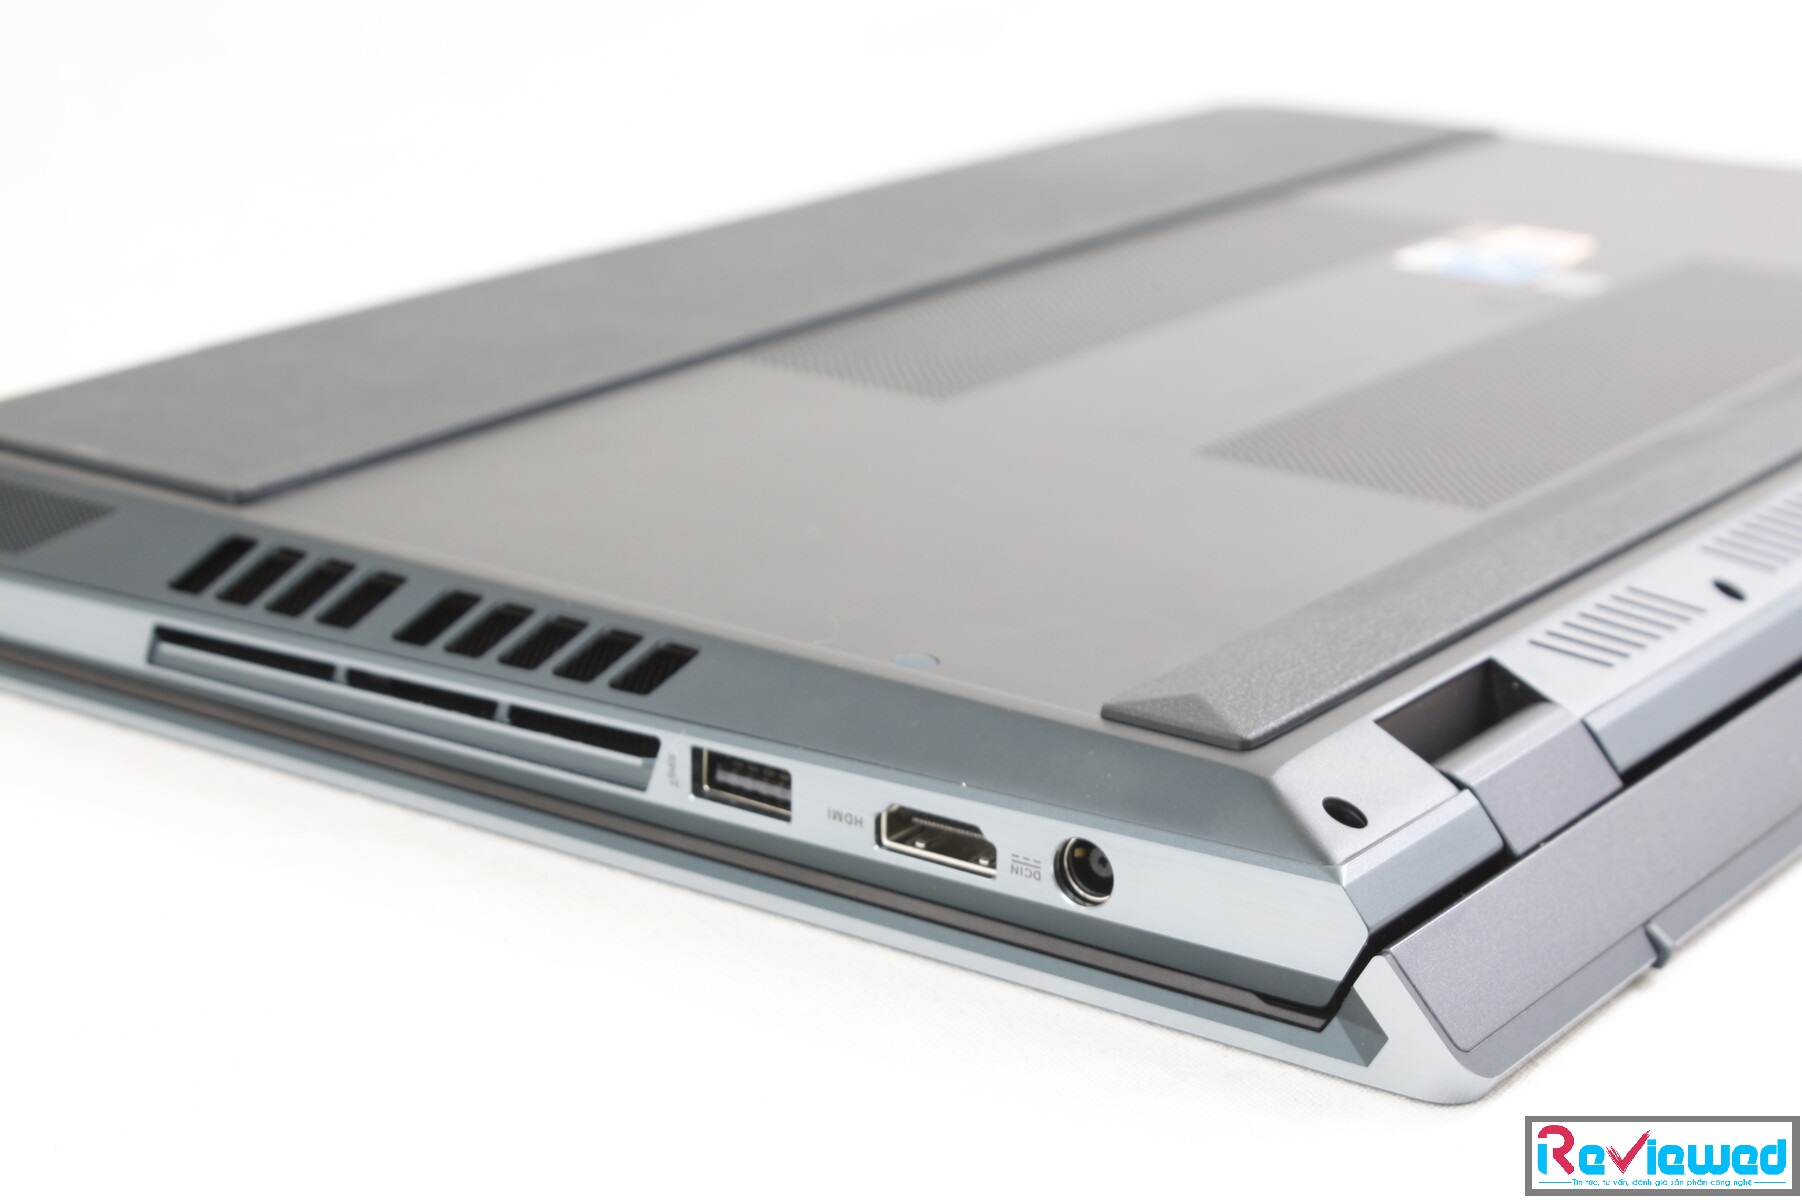 Đánh giá Asus ZenBook Pro Duo: Laptop 2 màn hình 4K độc đáo, Chuyên trang tư vấn laptop